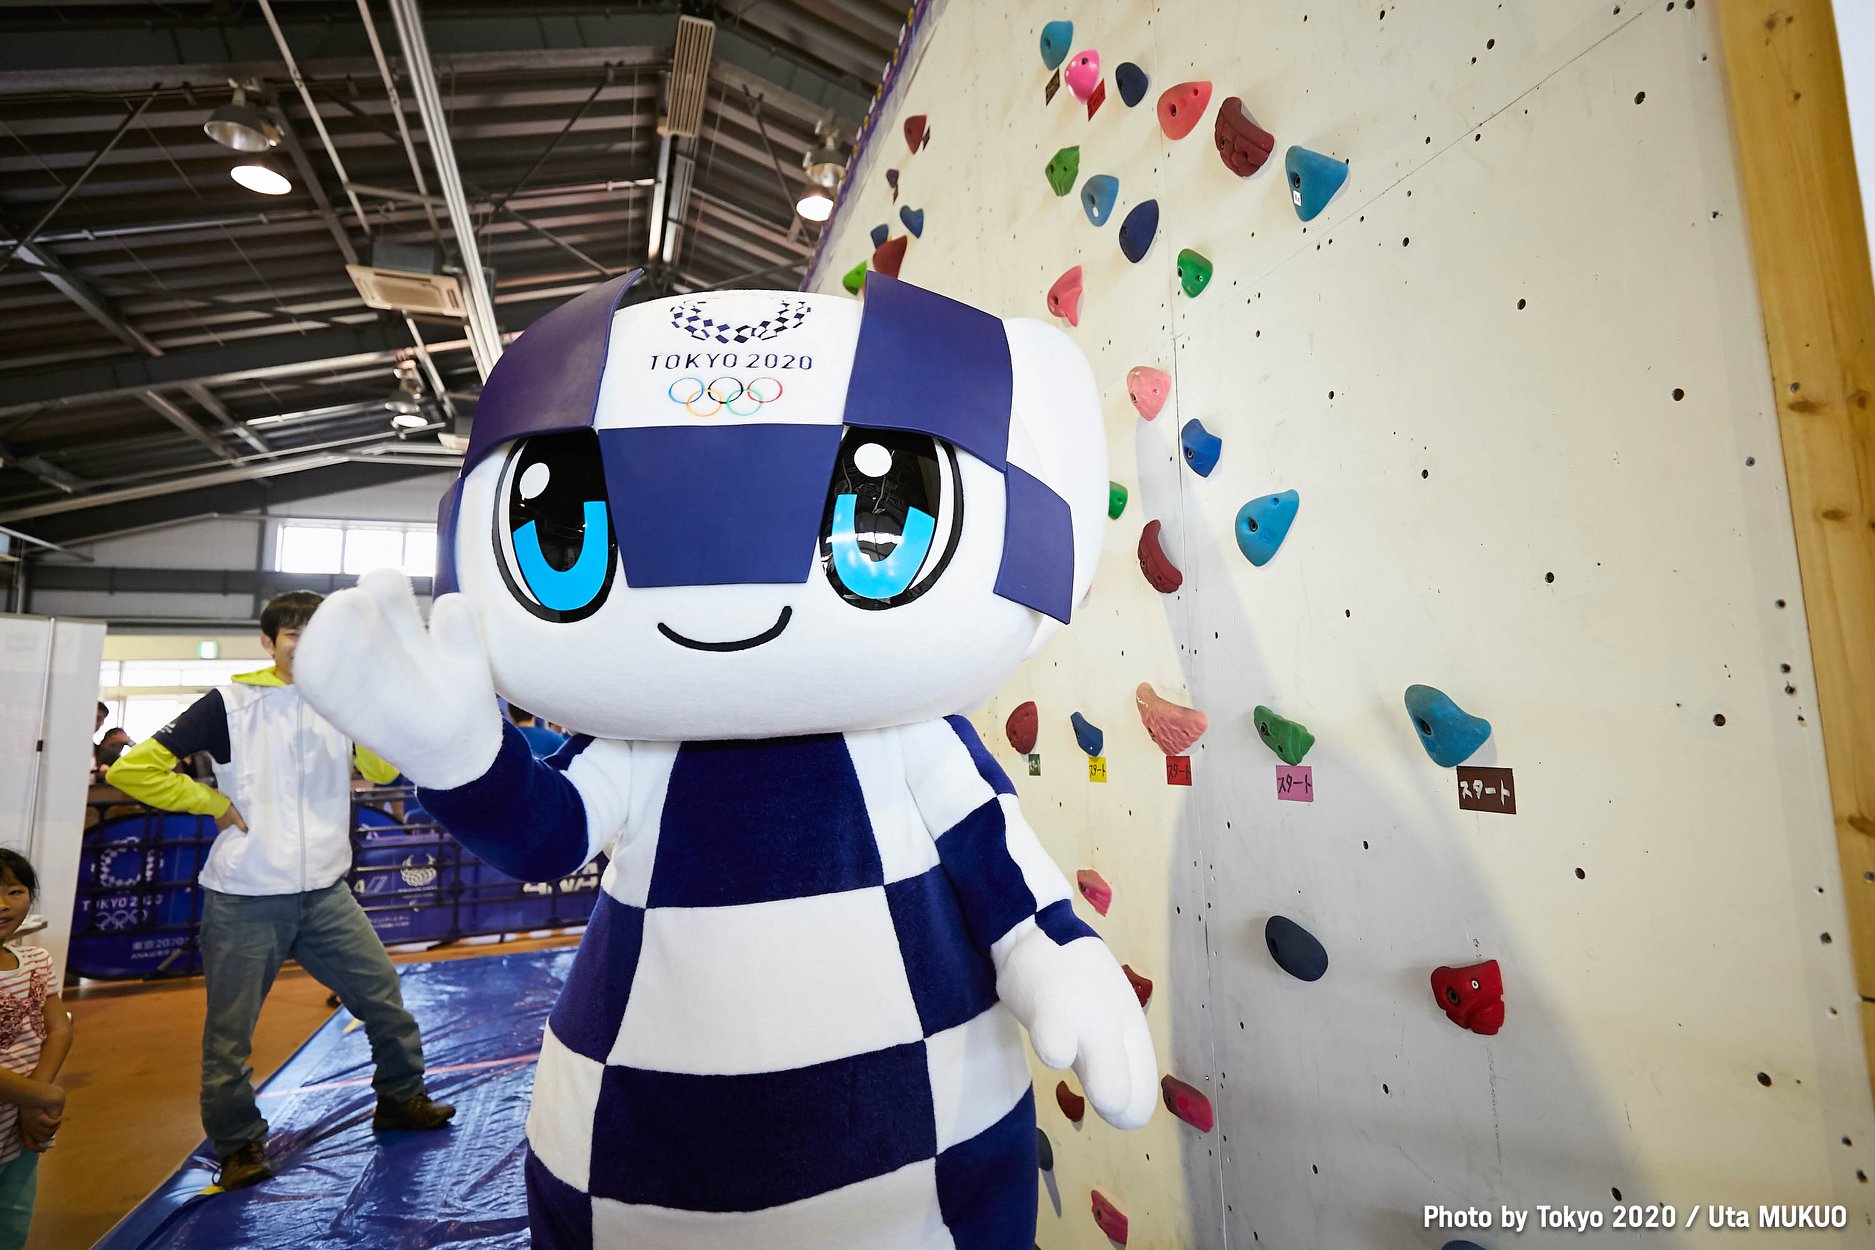 A quoi ressemblera la mascotte des Jeux Olympiques de Paris 2024